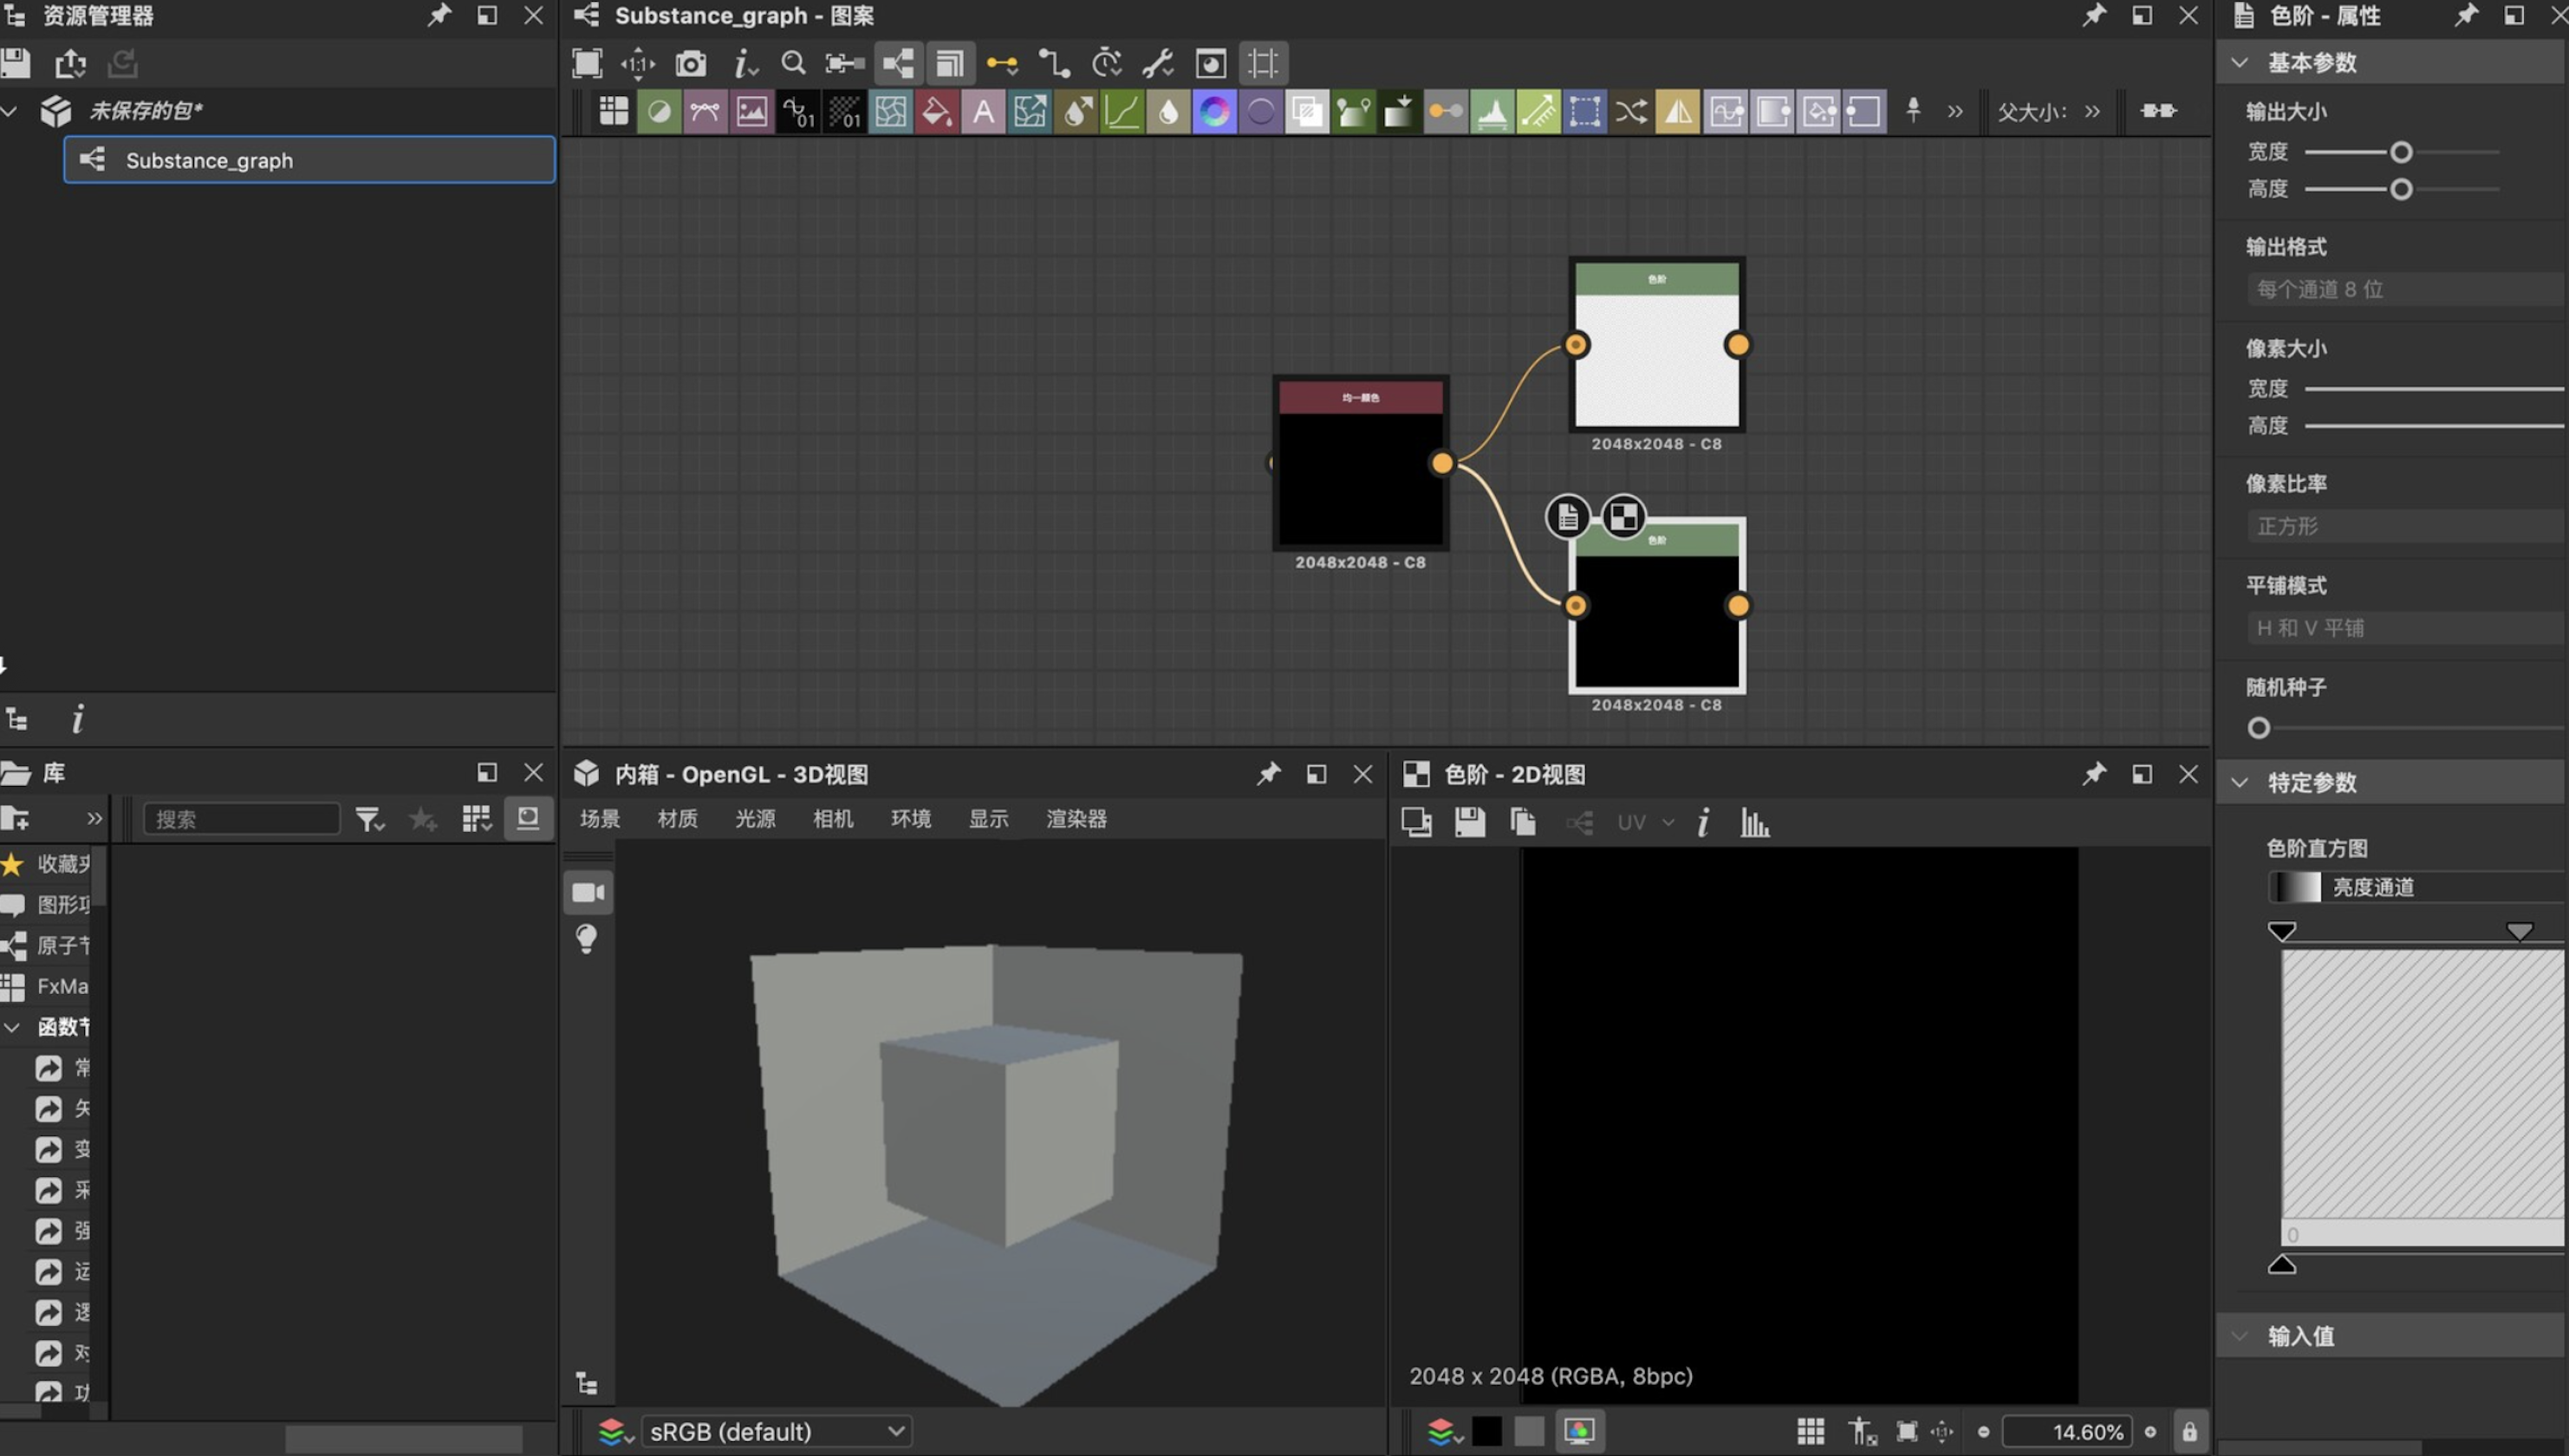 Adobe Substance 3D Designer for Mac v13.1.1 DS三维纹理材质编辑软件 破解版-1